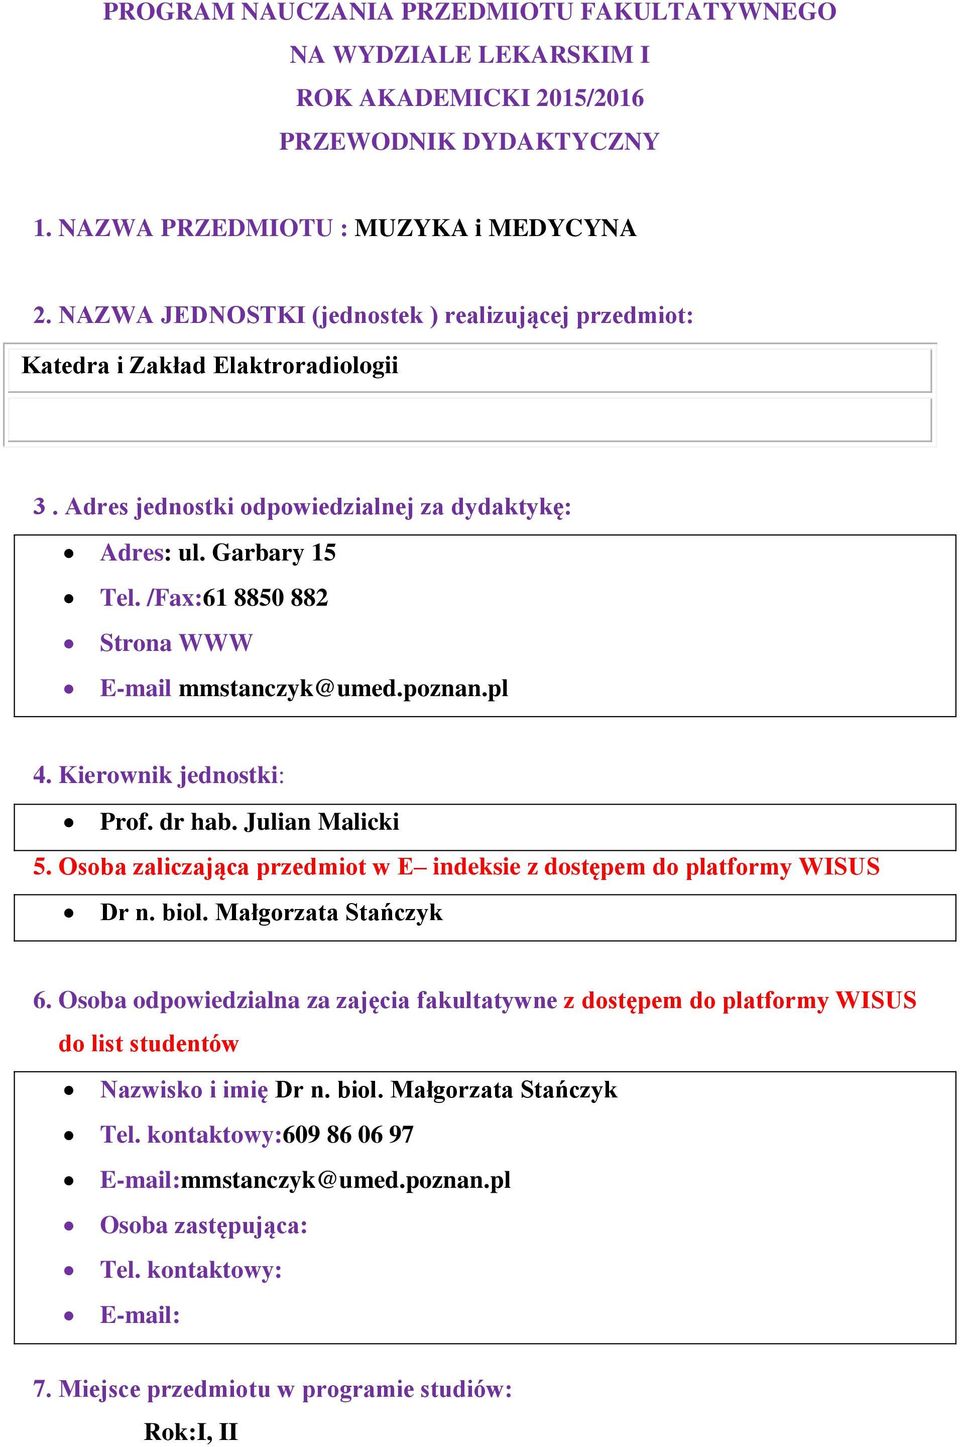 /Fax:61 8850 882 Strona WWW E-mail mmstanczyk@umed.poznan.pl 4. Kierownik jednostki: Prof. dr hab. Julian Malicki 5. Osoba zaliczająca przedmiot w E indeksie z dostępem do platformy WISUS 6.